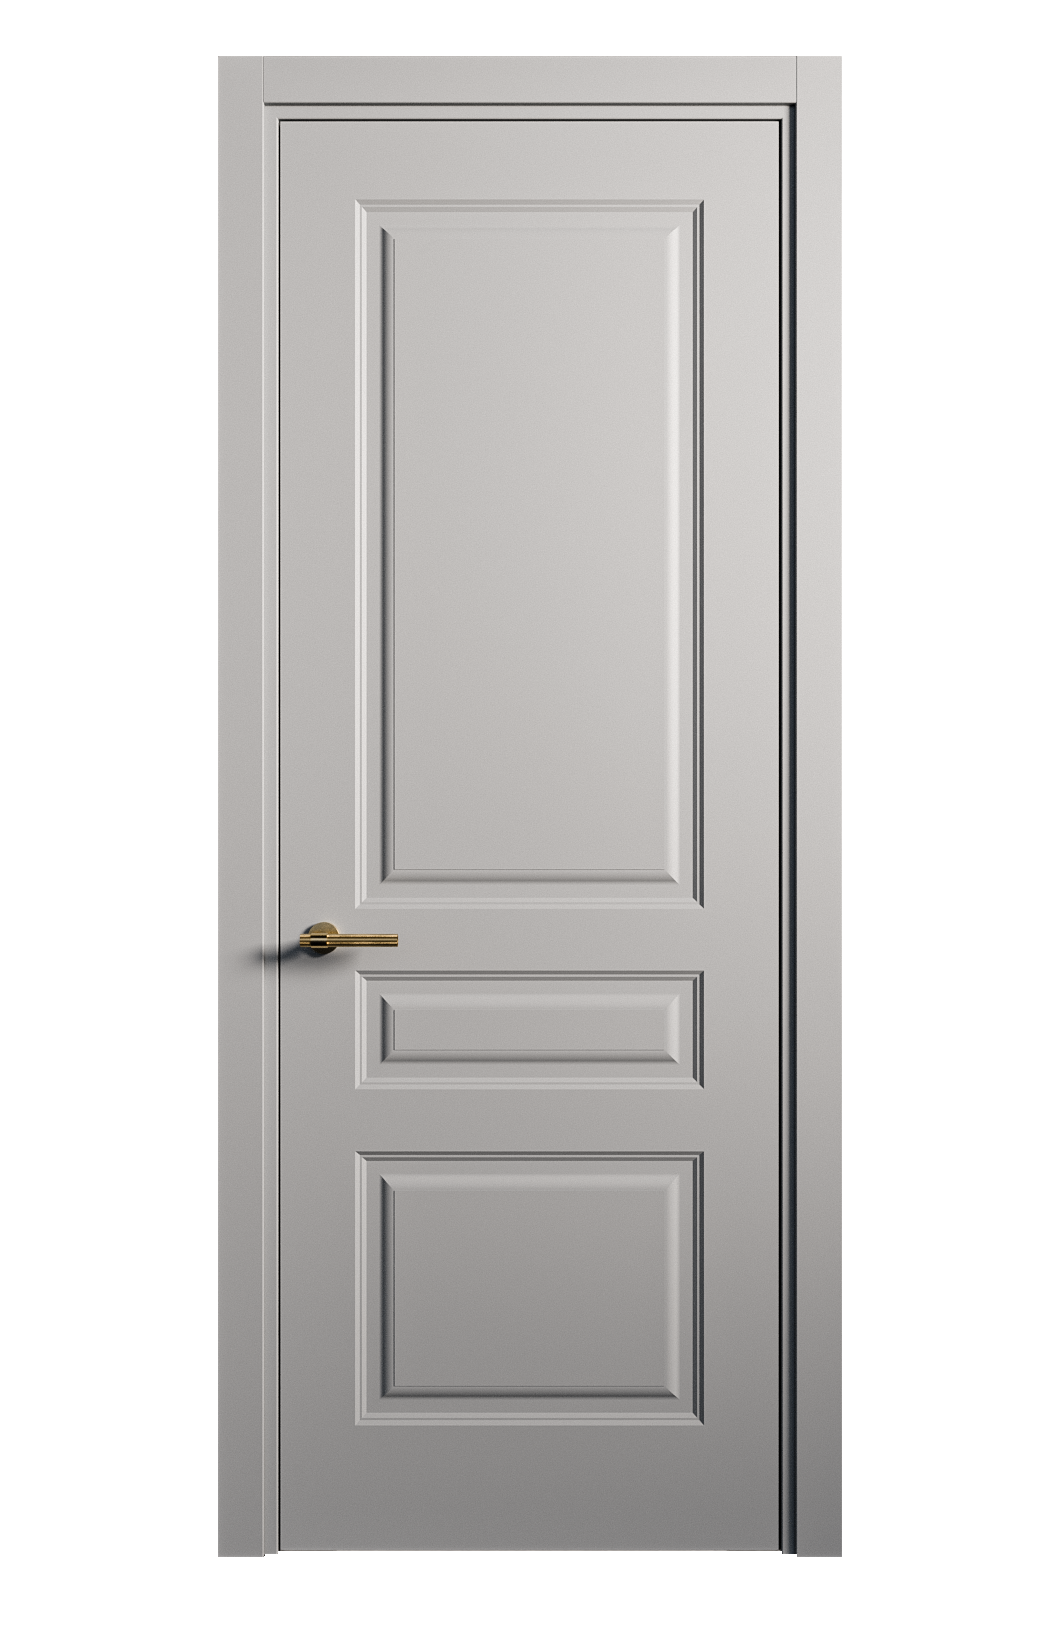 Межкомнатная дверь Вита-2 глухая эмаль ral 7040 26392